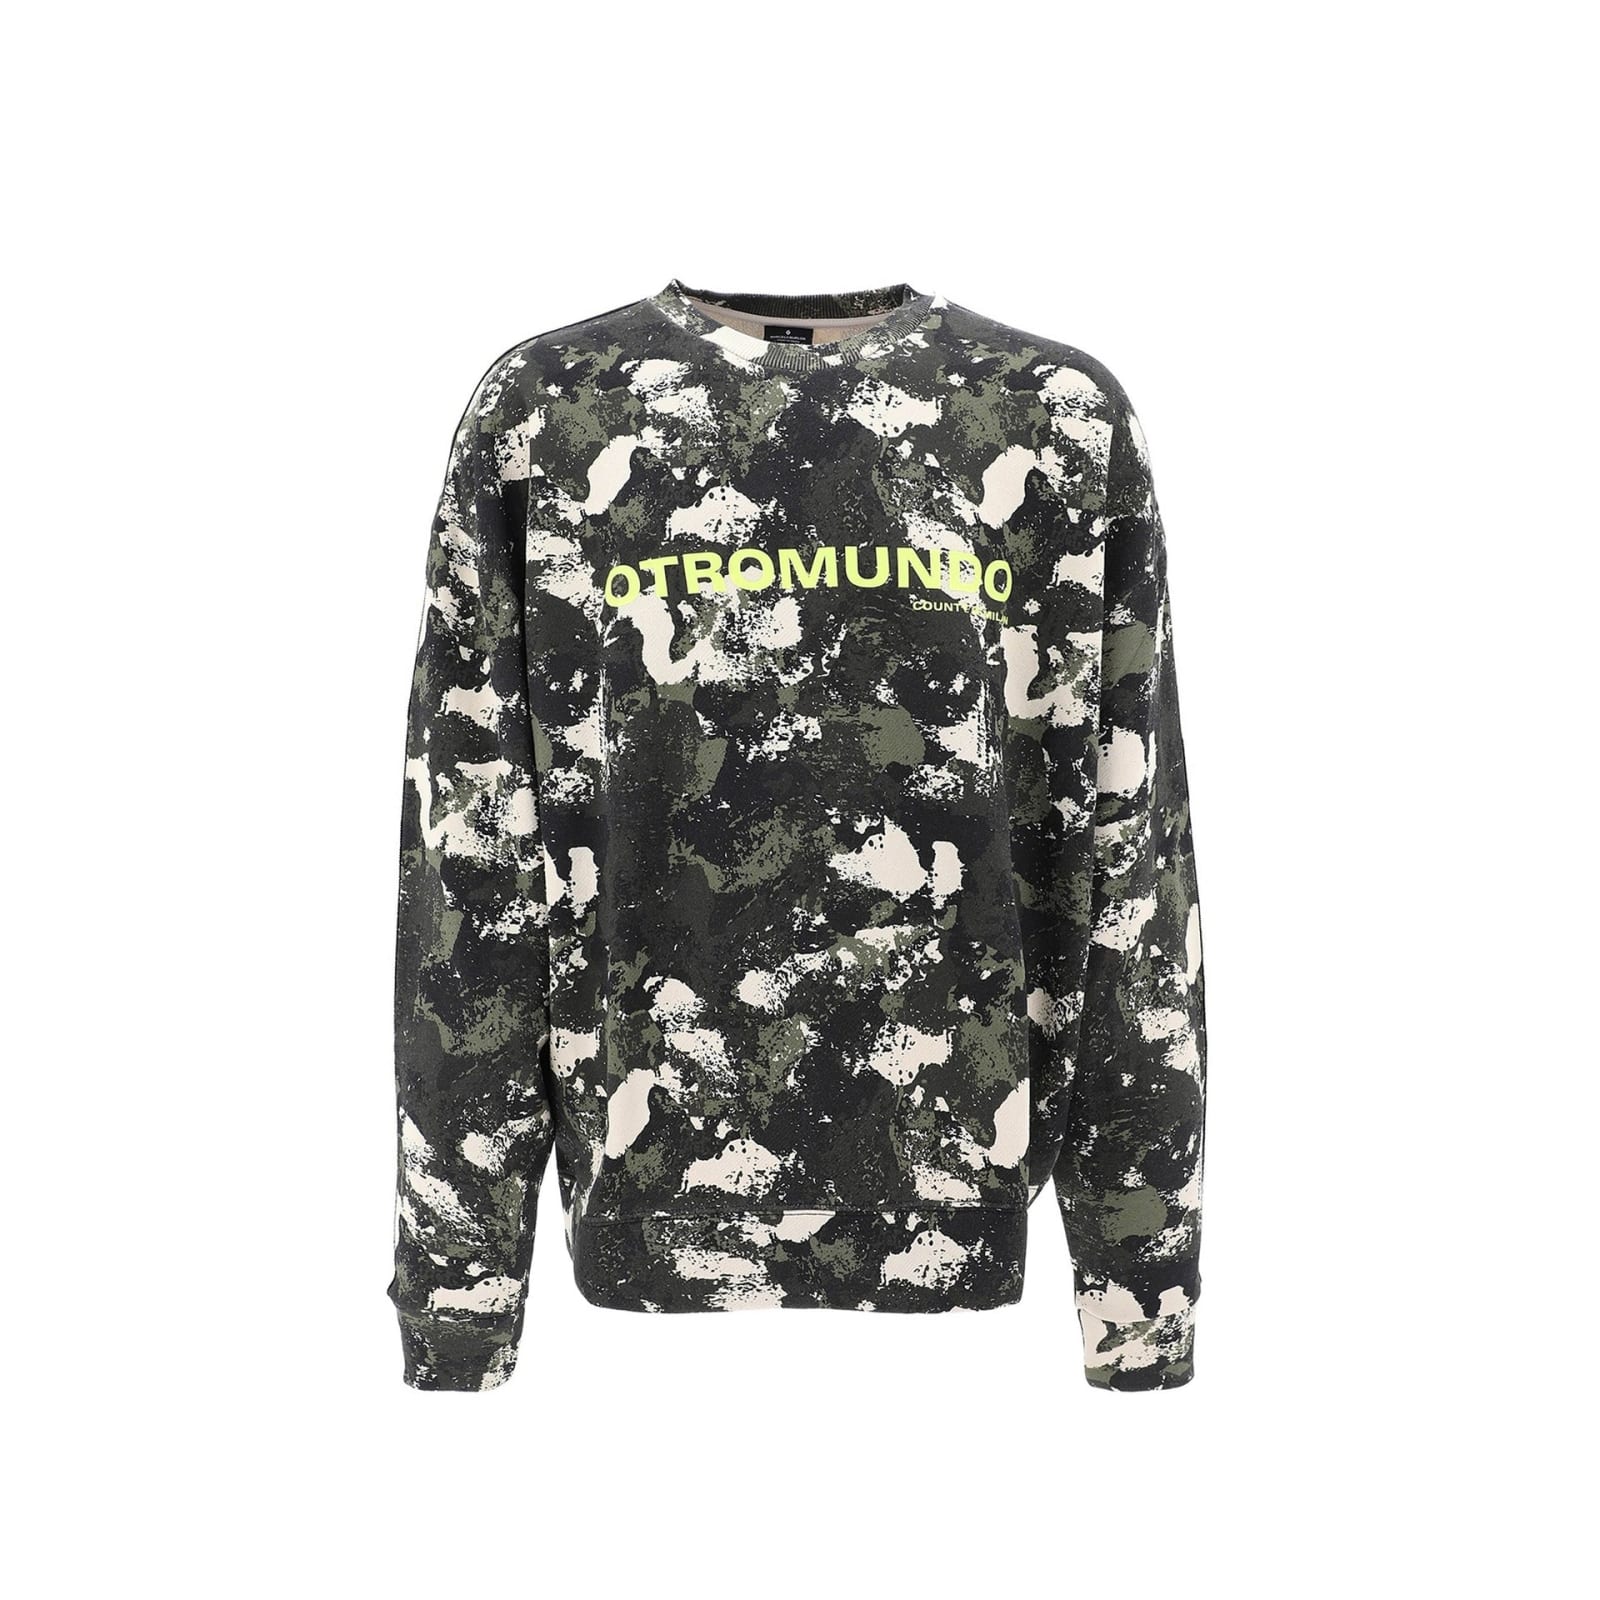 Otromundo Camouflage Sweatshirt